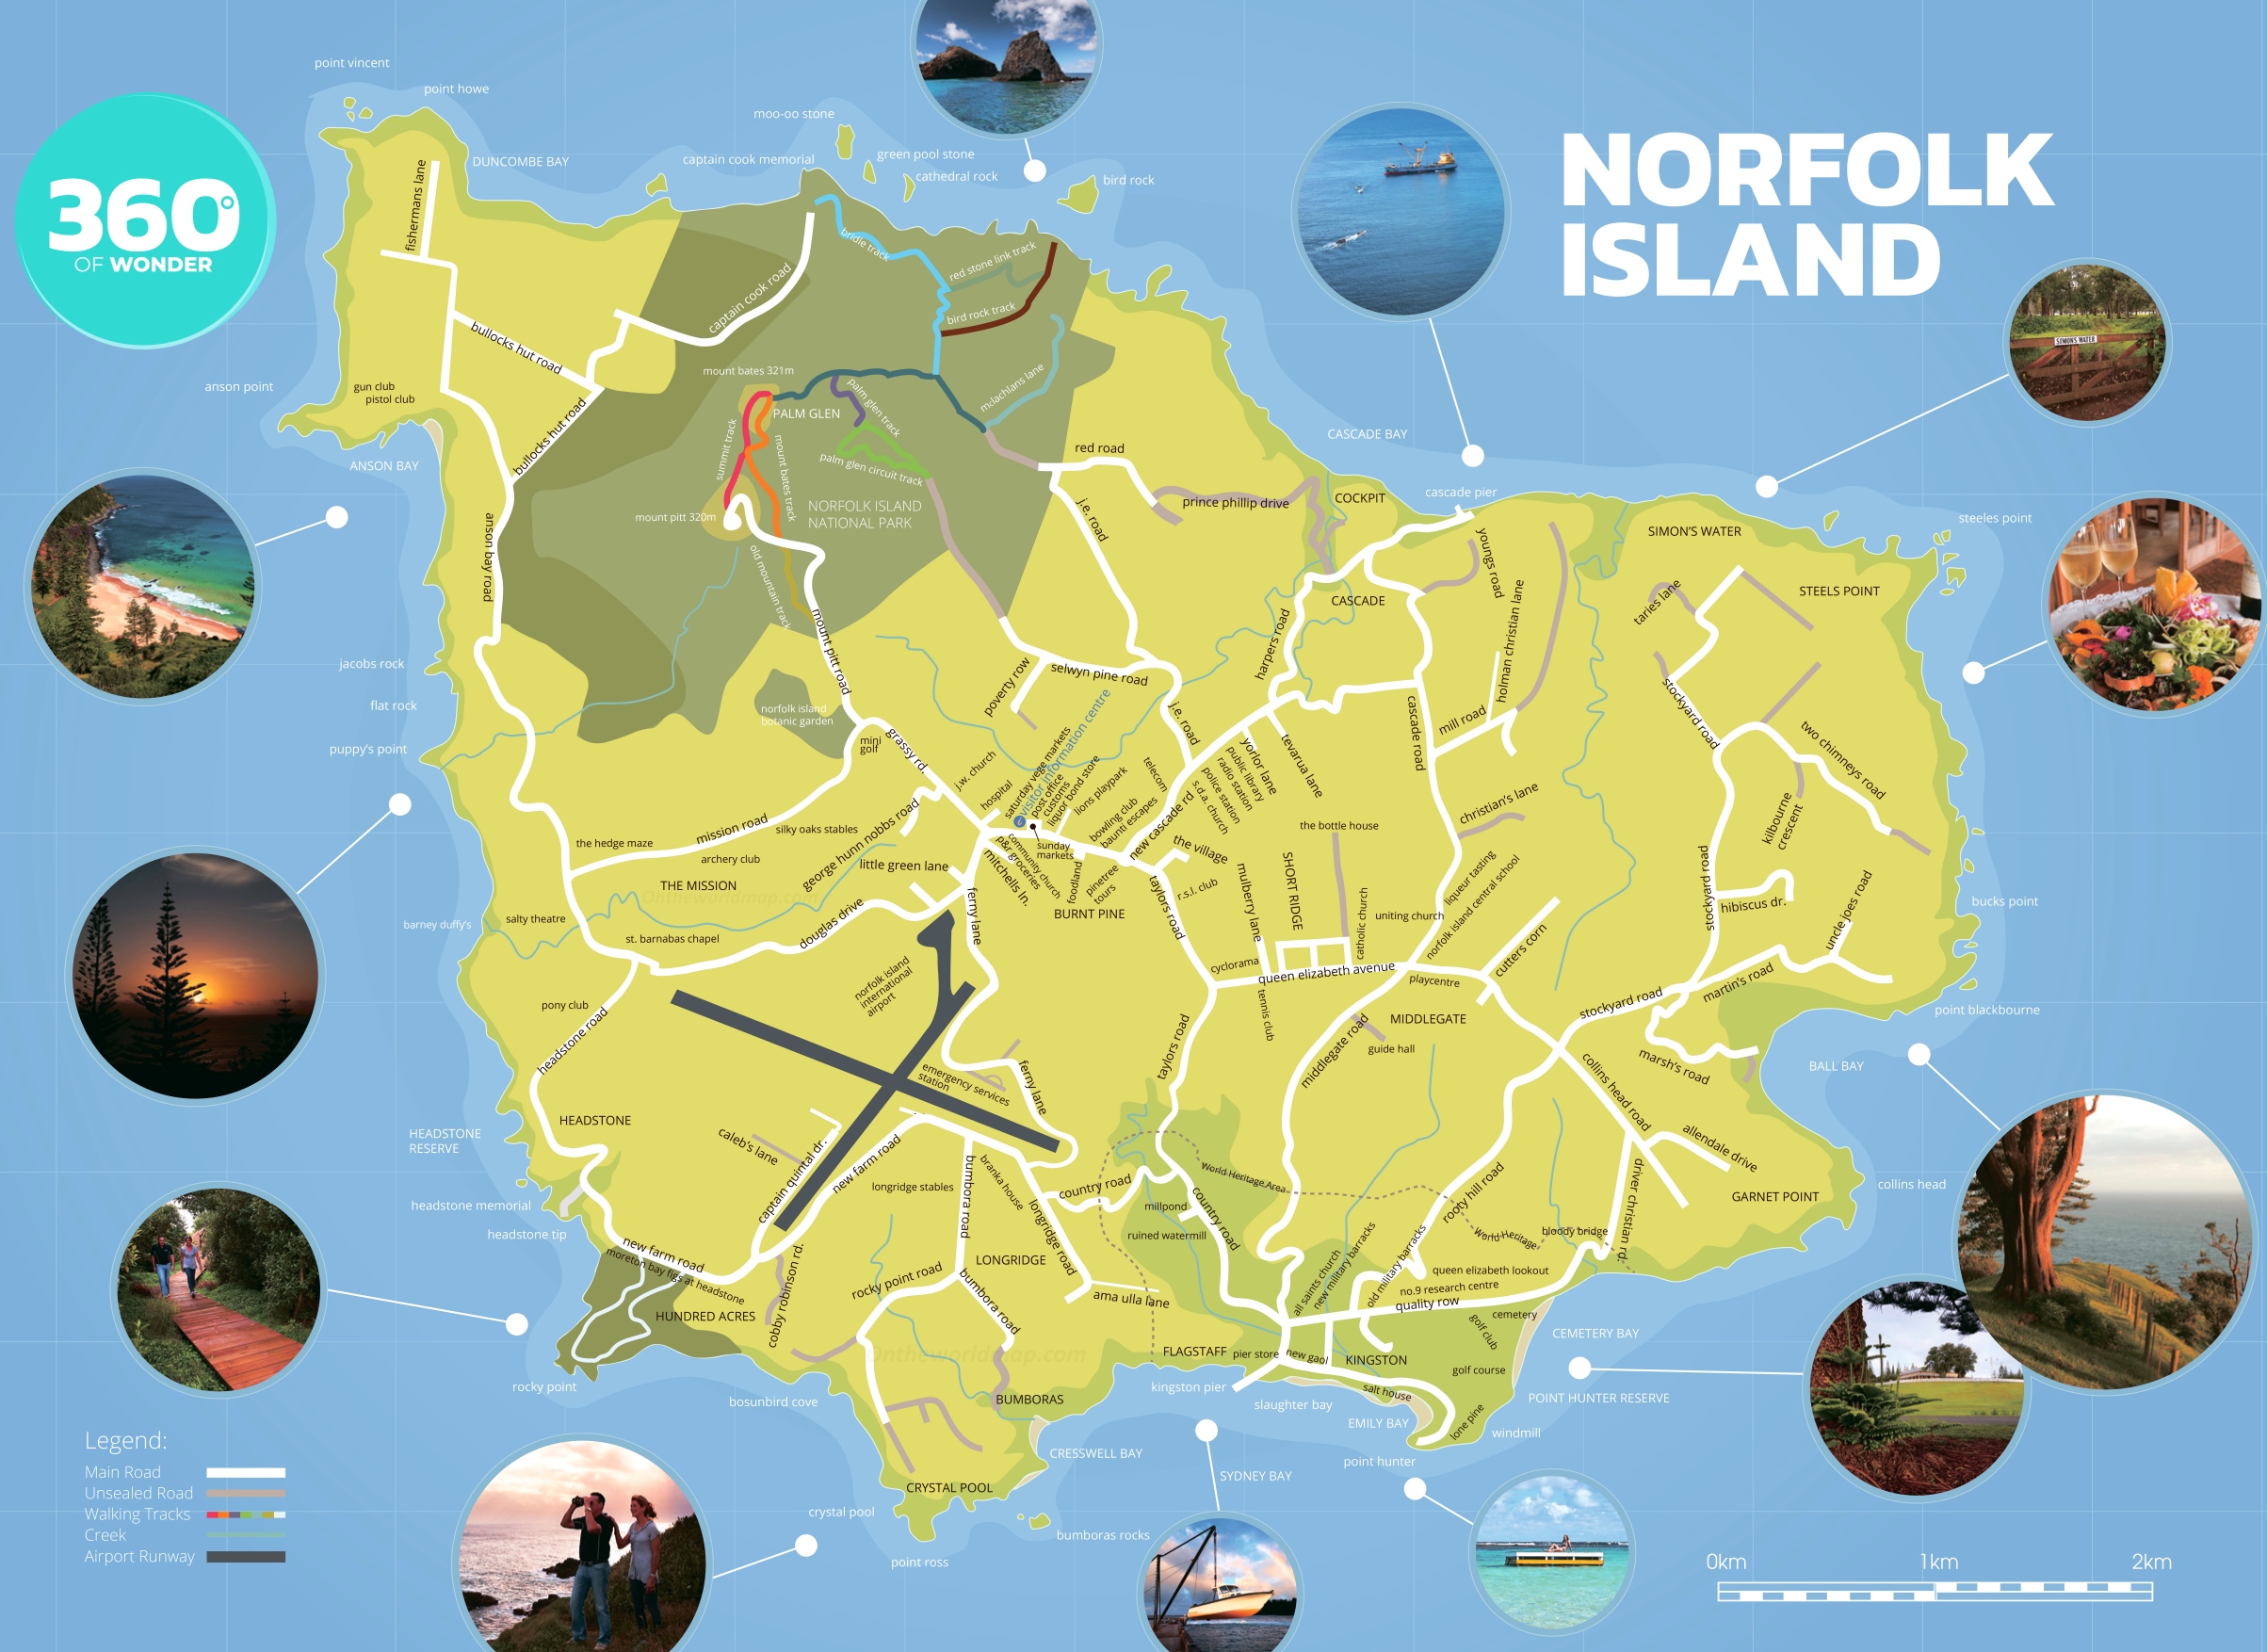 norfolk island tourist attractions